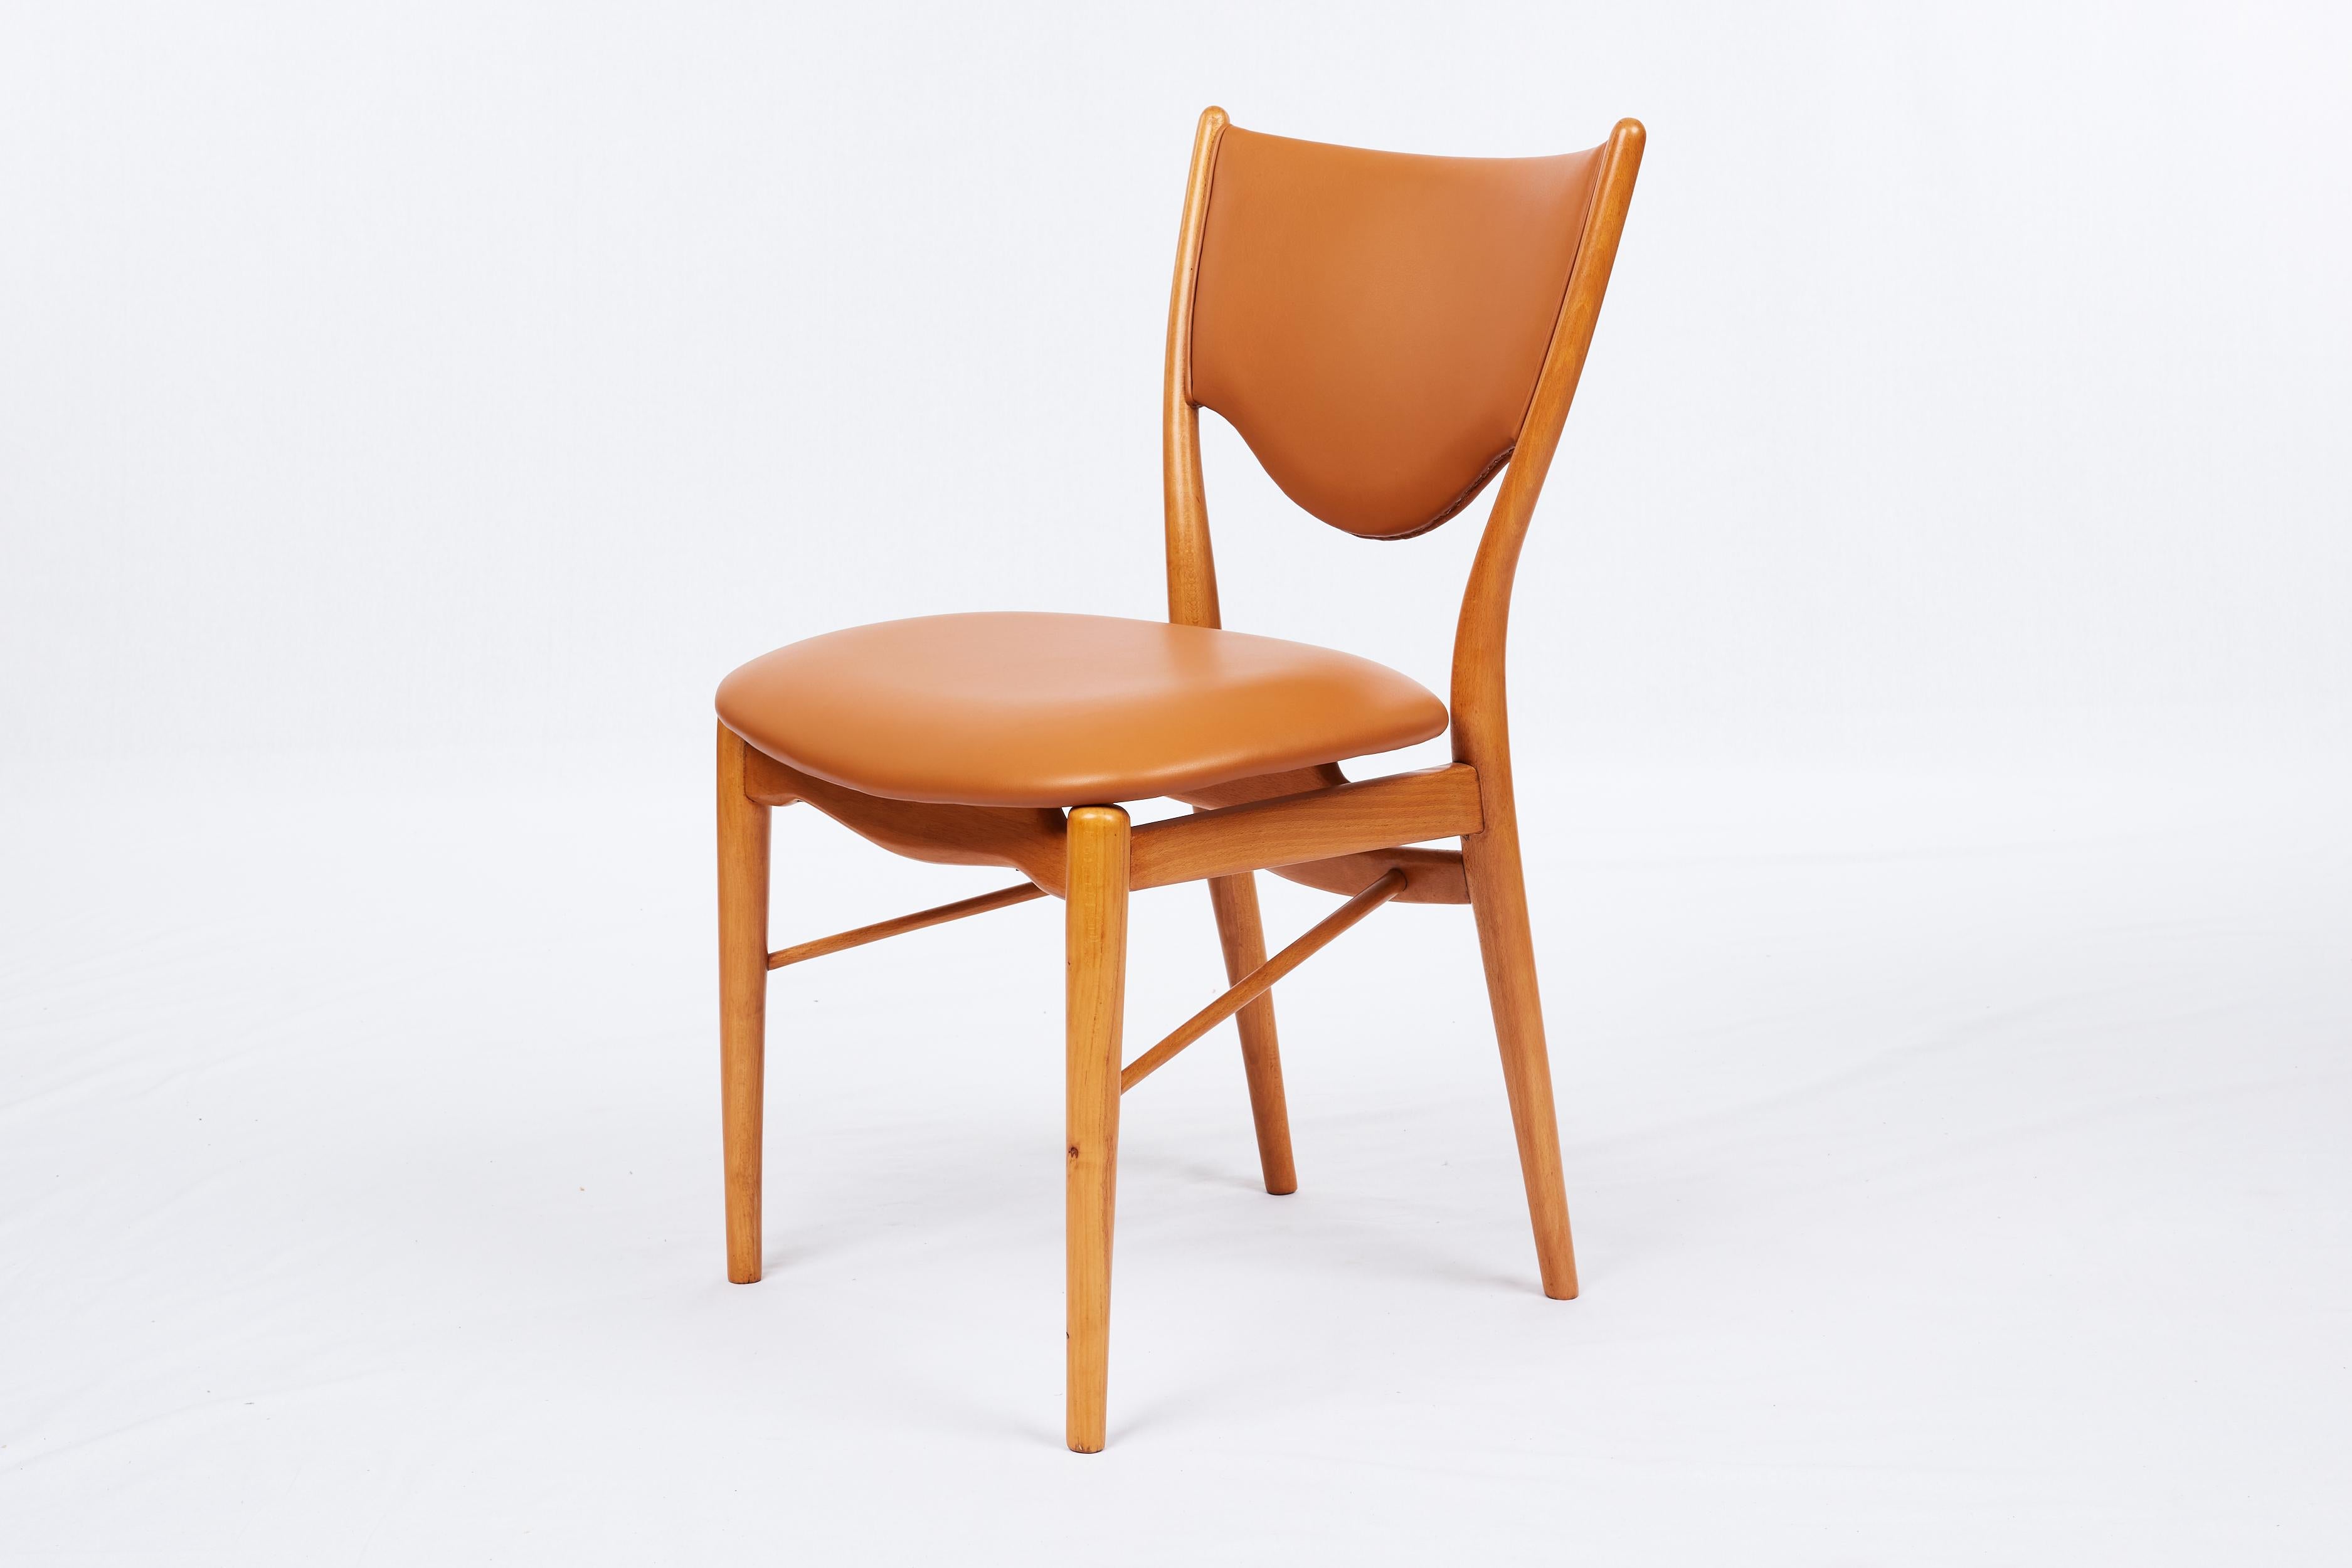 Finn Juhl BO-63 chair. Designed in 1952. Produced by Bovirke.